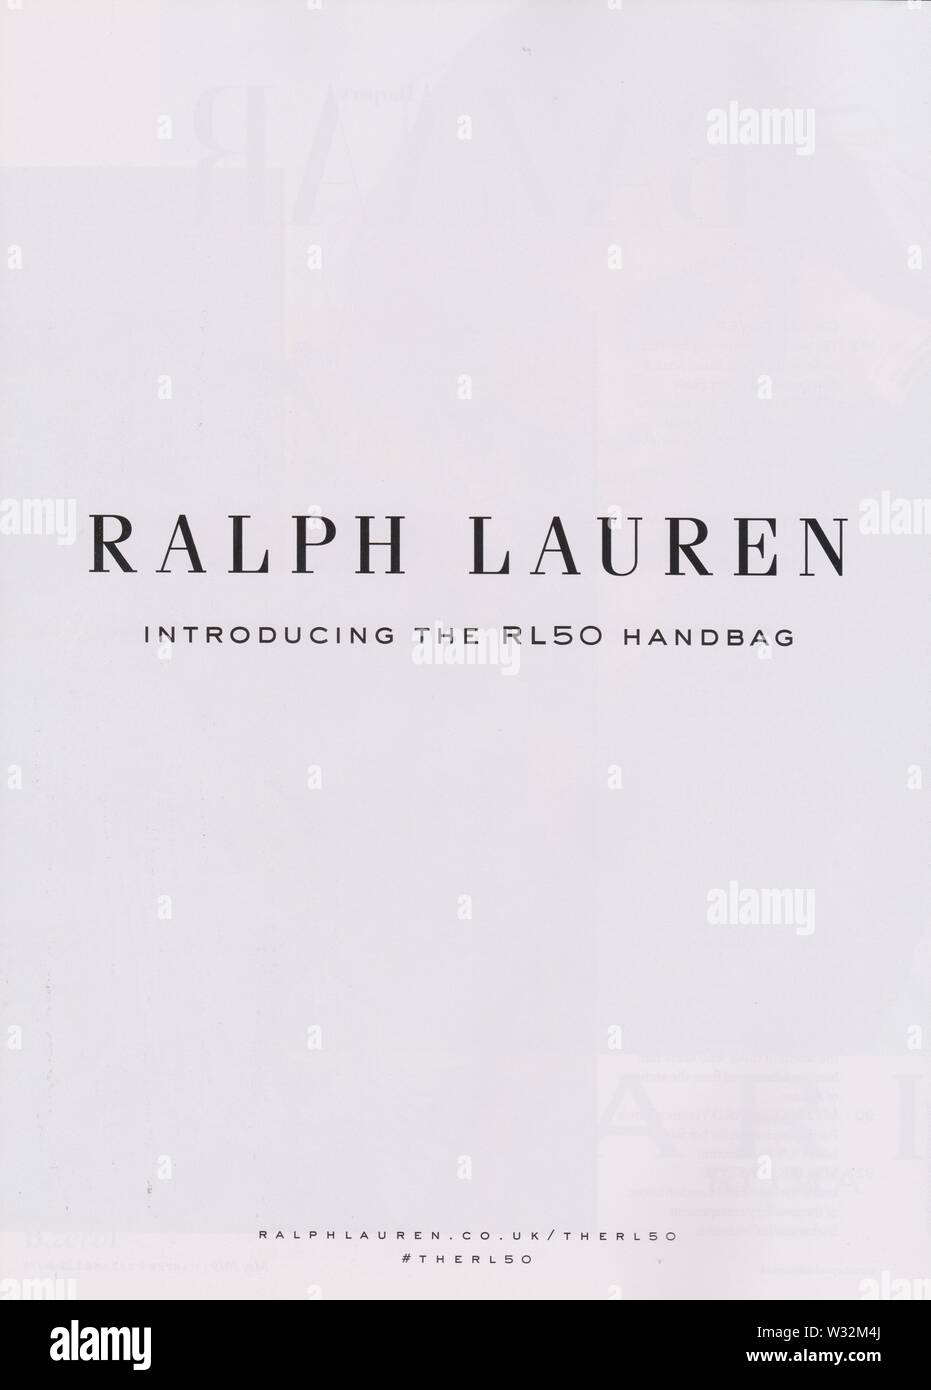 Affiche publicitaire de la maison Ralph Lauren avec Taylor Hill dans la version papier du magazine à partir de 2019, de la publicité, publicité de Ralph Lauren création 2010s Banque D'Images